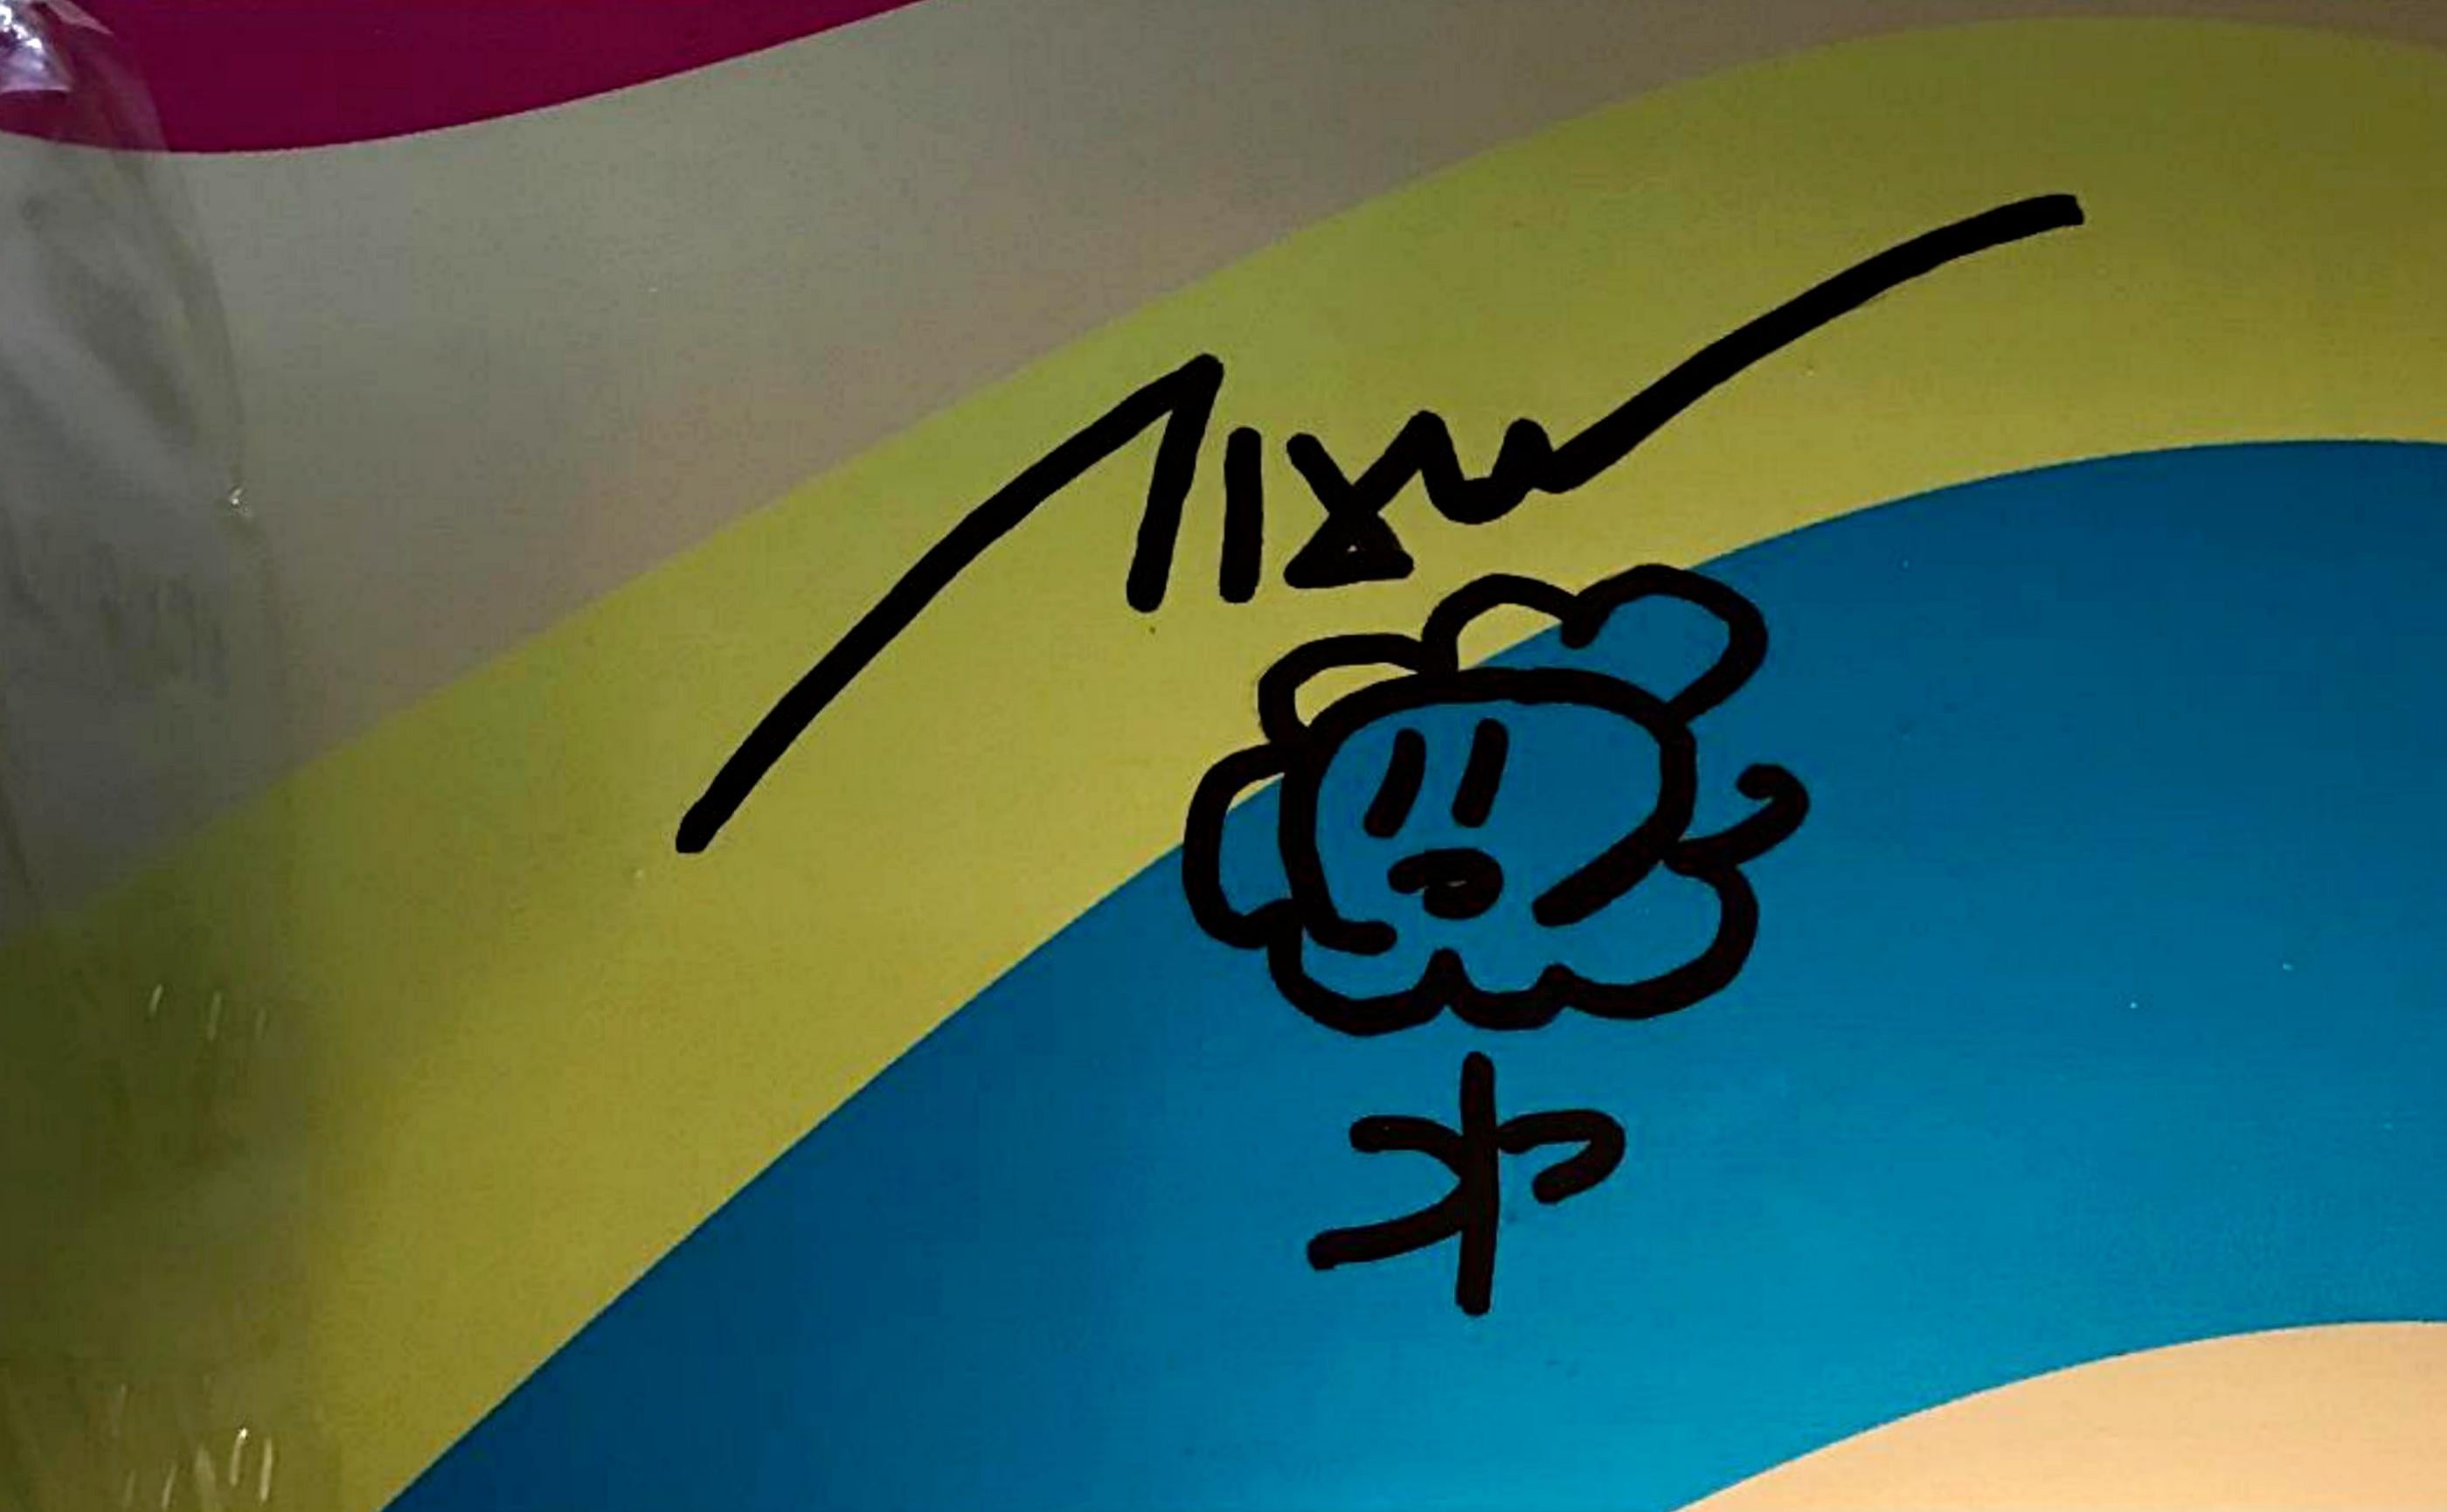 Takashi Murakami
Original handsignierte Blumenzeichnung auf Skateboard in limitierter Auflage, 2017
Einzigartige Blumenzeichnung mit Marker auf Skateboard. Signiert von Murakami
Mit Marker gezeichnete und von Murakami fett signierte